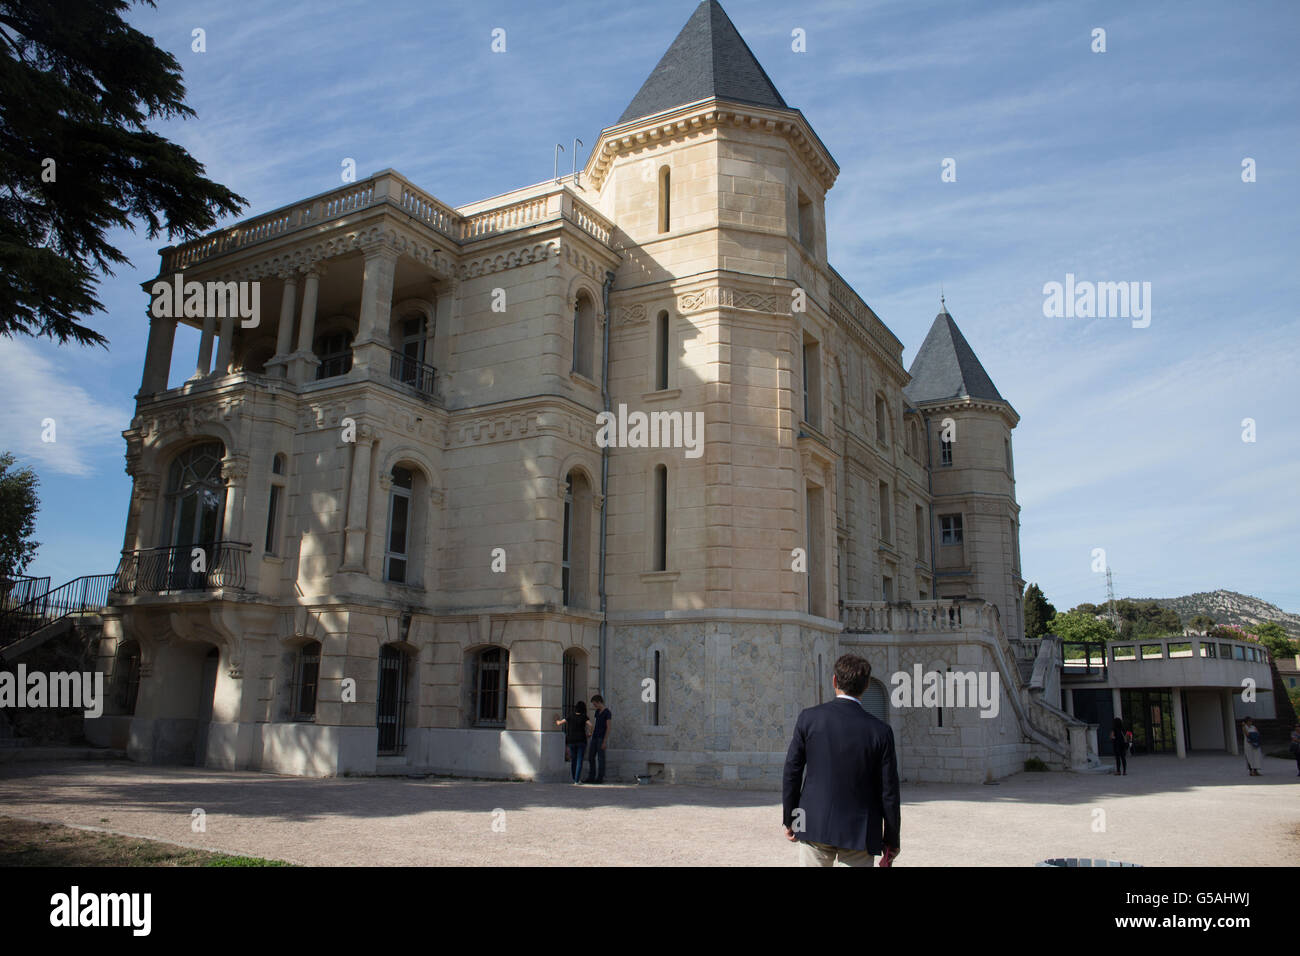 Château de La Buzine,Marseille Stock Photo